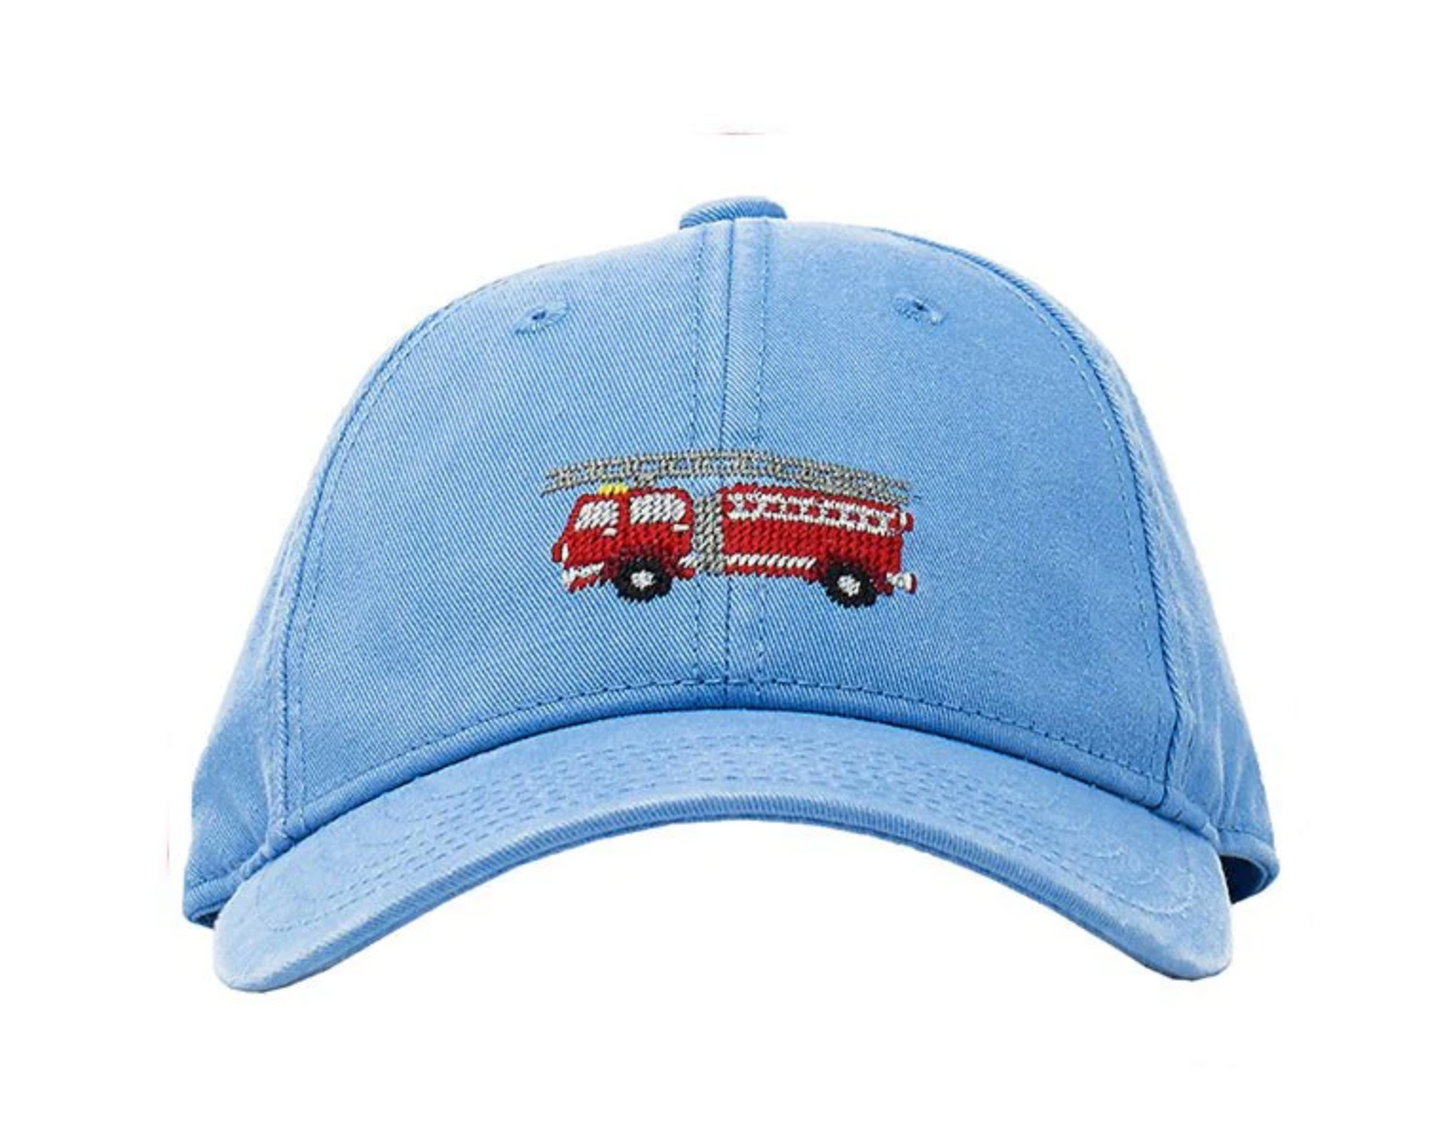 Kids Firetruck Baseball Hat - Light Blue